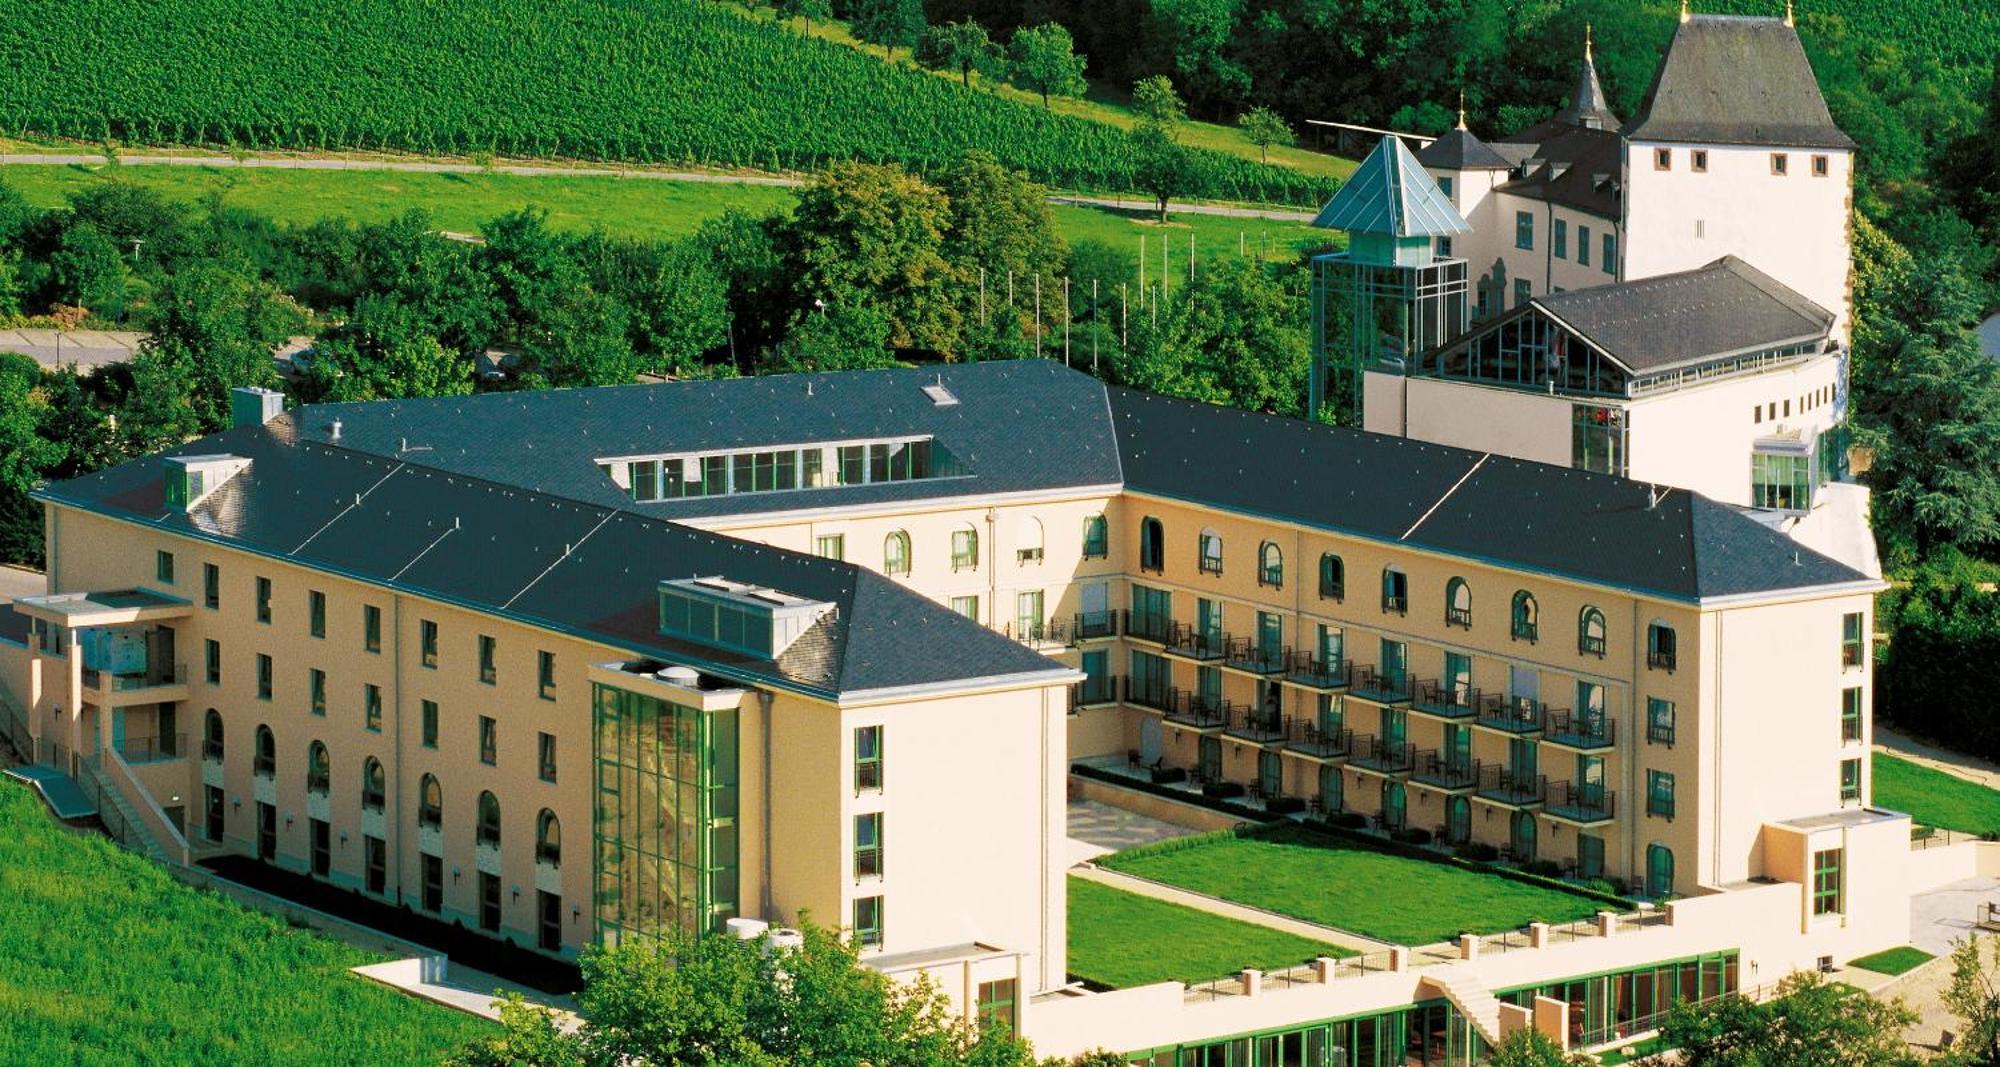 Victor'S Residenz-Hotel Schloss Berg 네니히 외부 사진